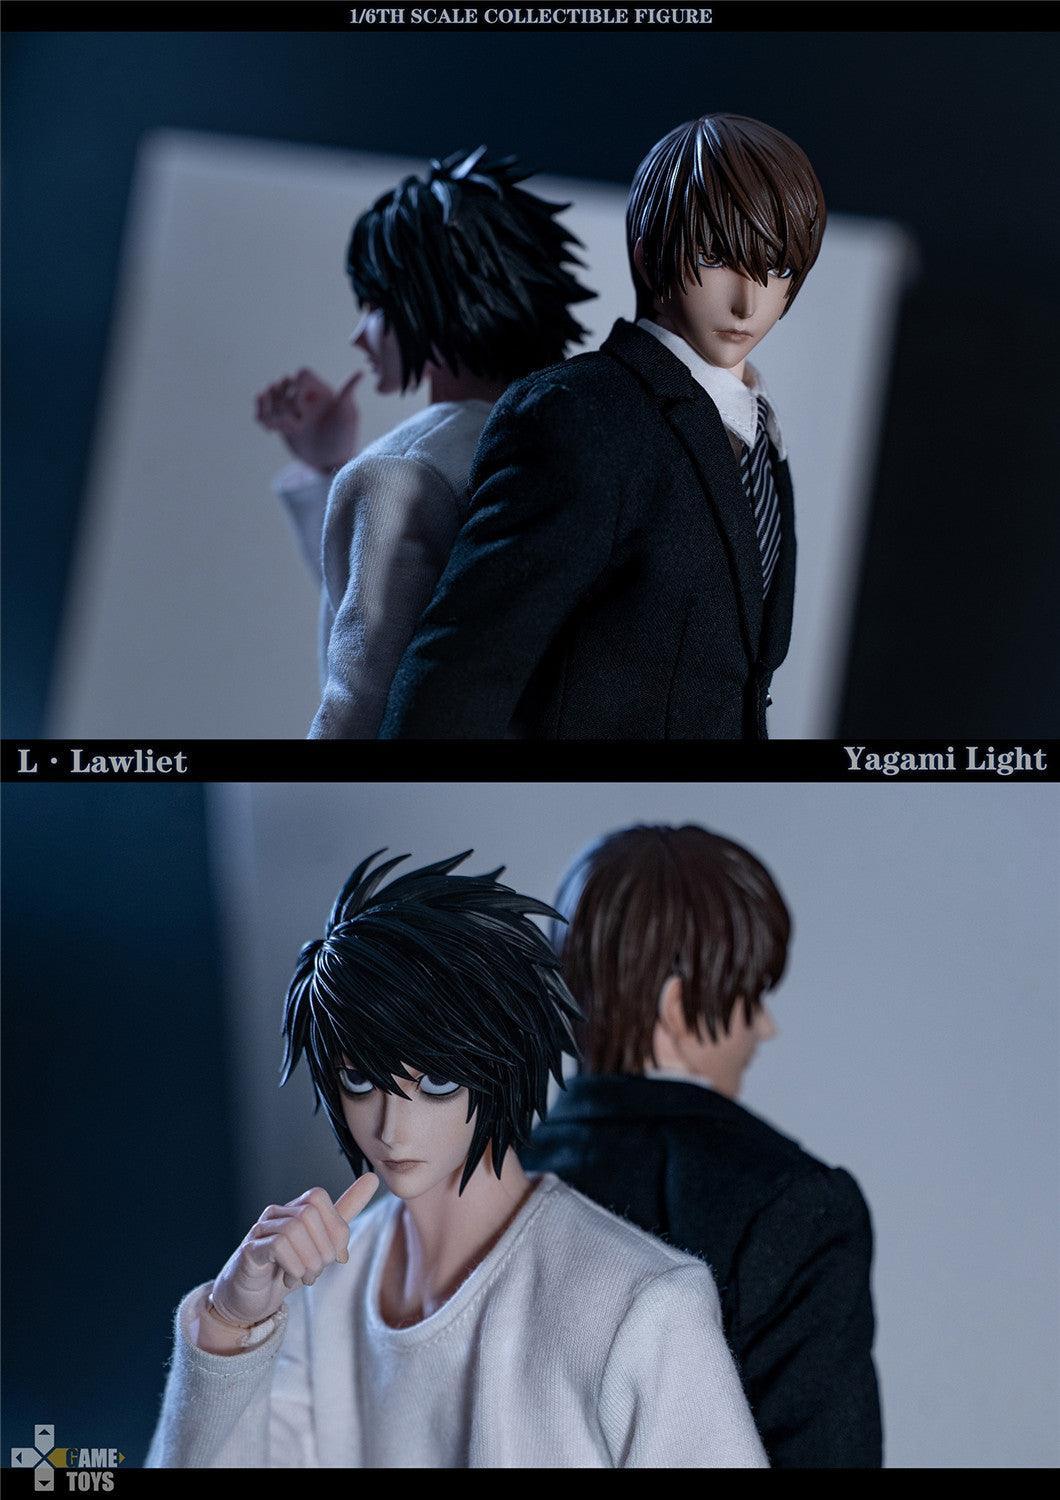 GameToys - 1:6 L Lawliet & Yagami Light Double Suit Action Figure Set